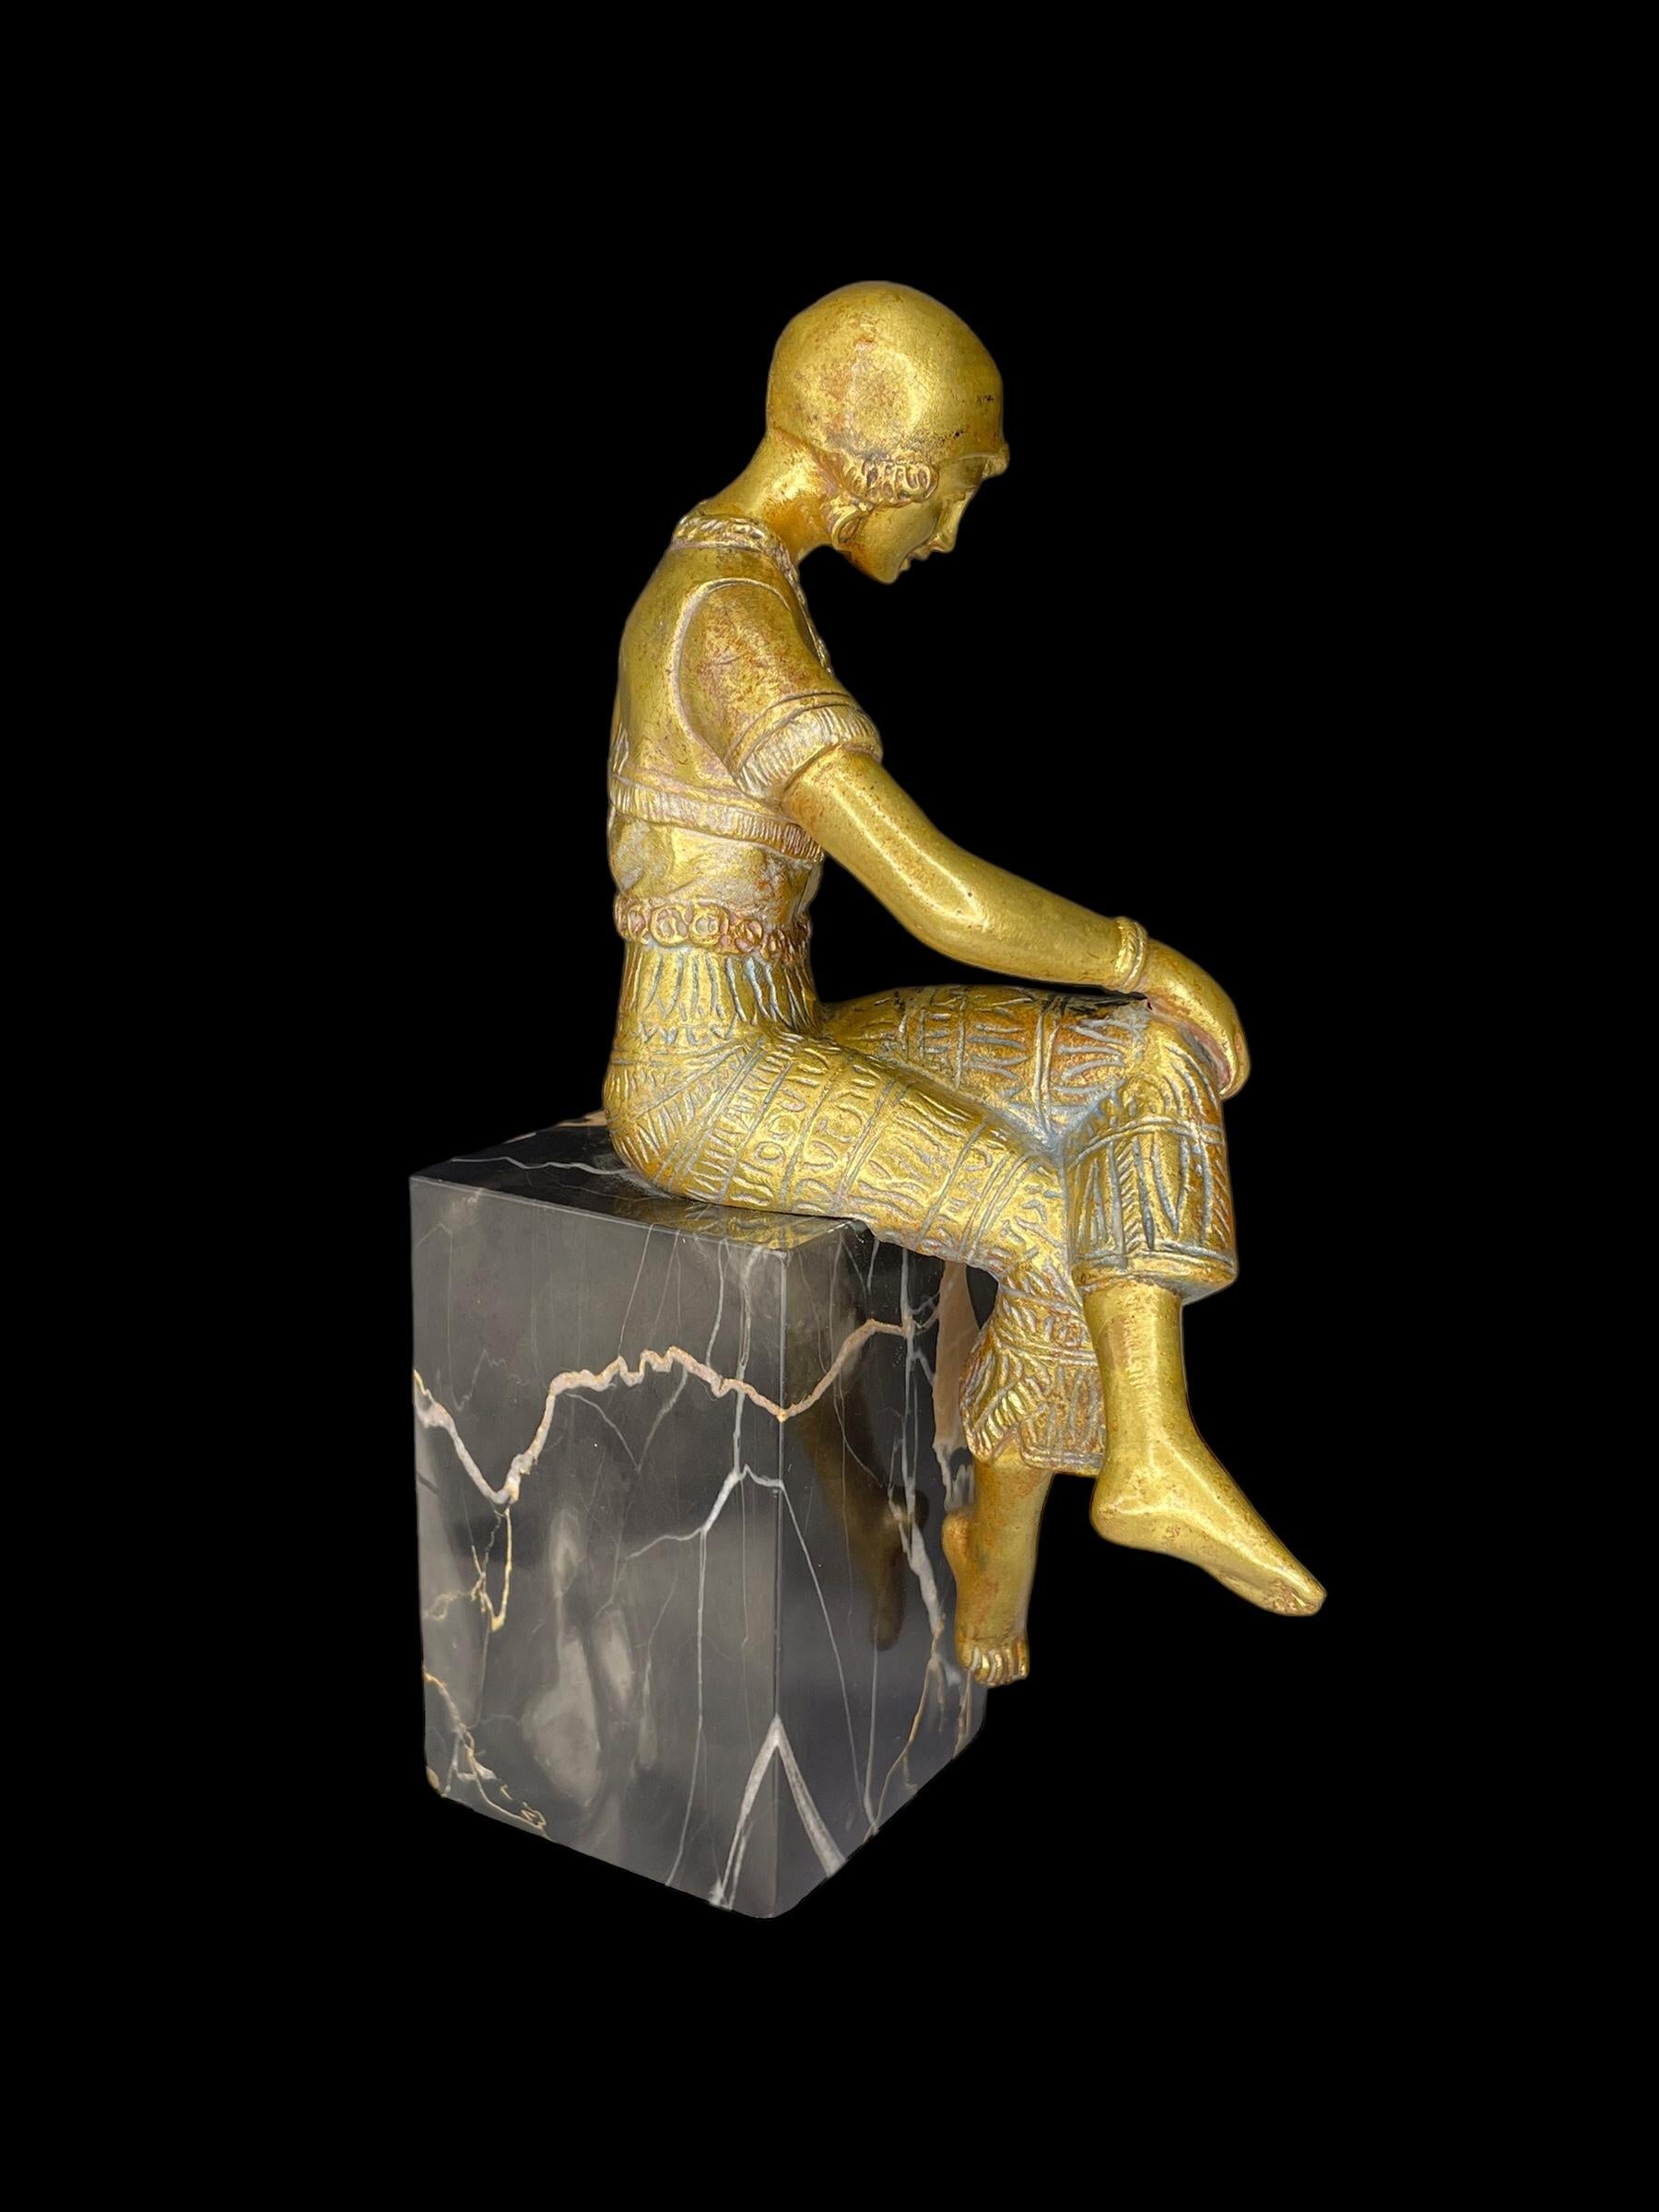 Fille Art Déco en bronze doré, signée 'Jorel', et montée sur son socle original en marbre portoro de Belgique.
La jeune femme élégante est vêtue d'un pantalon de harem, le summum de la mode à l'époque, inspiré par l'influence du Moyen-Orient.